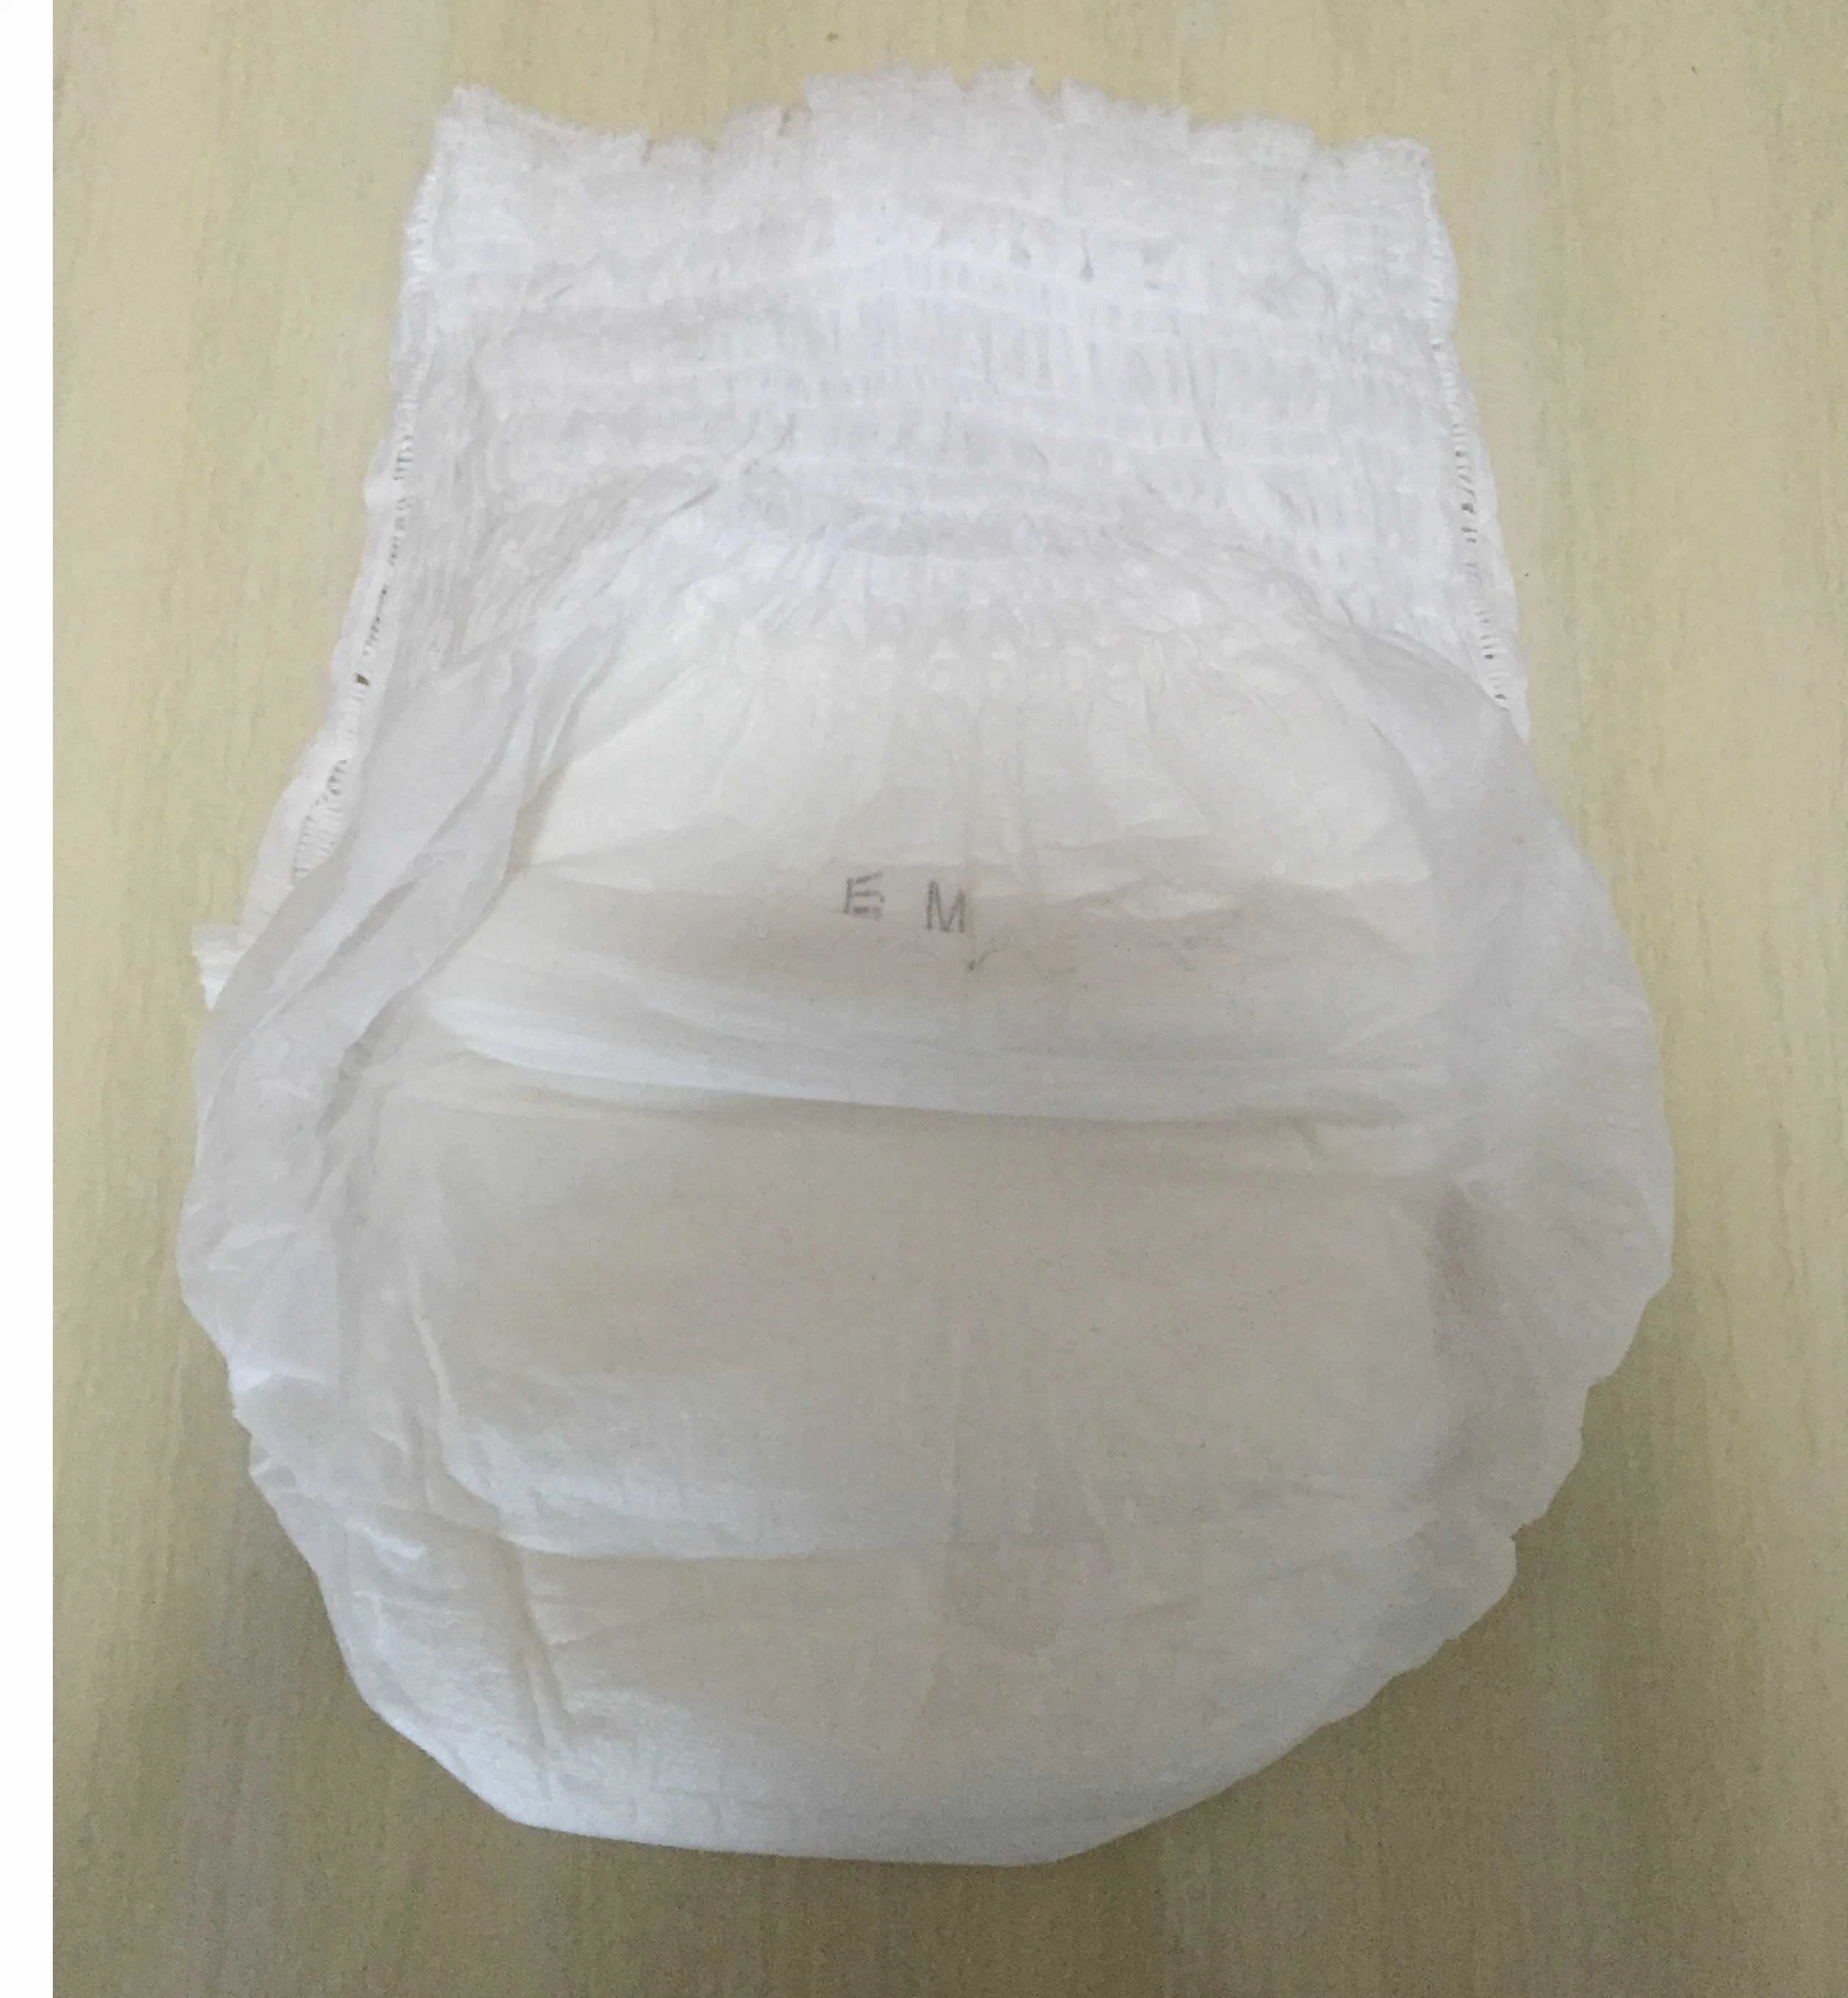 Erwachsene Pull-up Frauen Inkontinenz Unterwäsche maximale Saugfähigkeit Produkte für Erwachsene